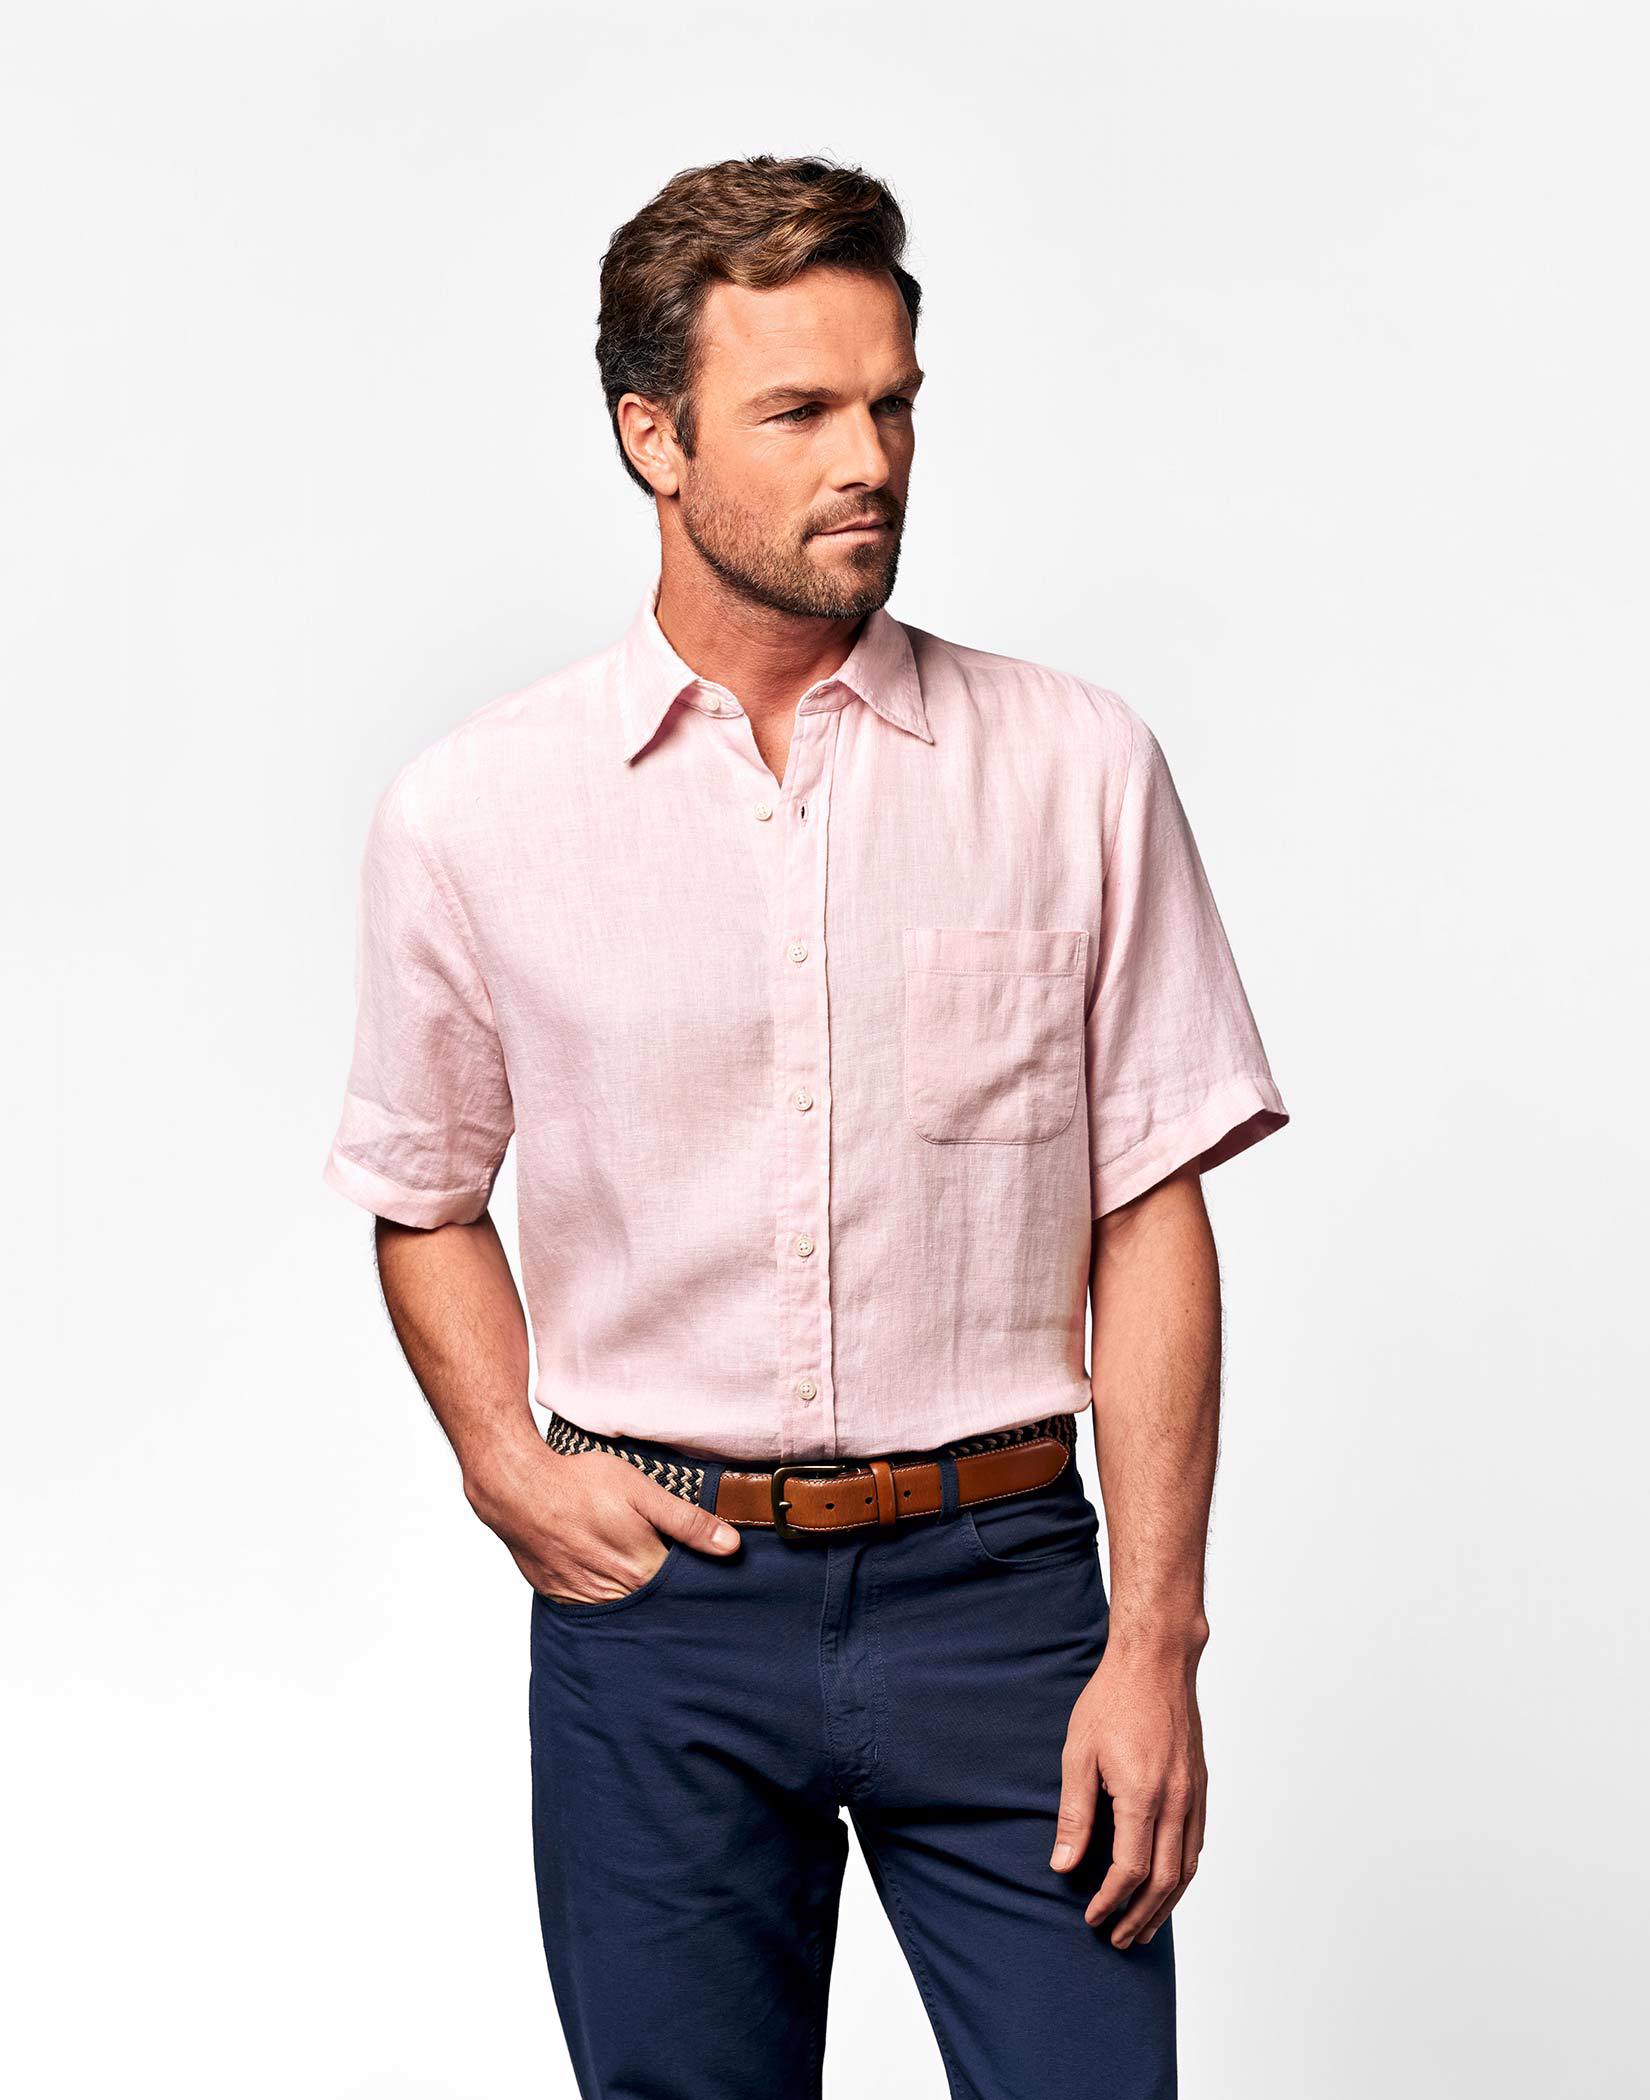 https://cdn.josephturner.co.uk/Original/mens-pink-short-sleeve-linen-shirt-mclnsspnk_1.jpg